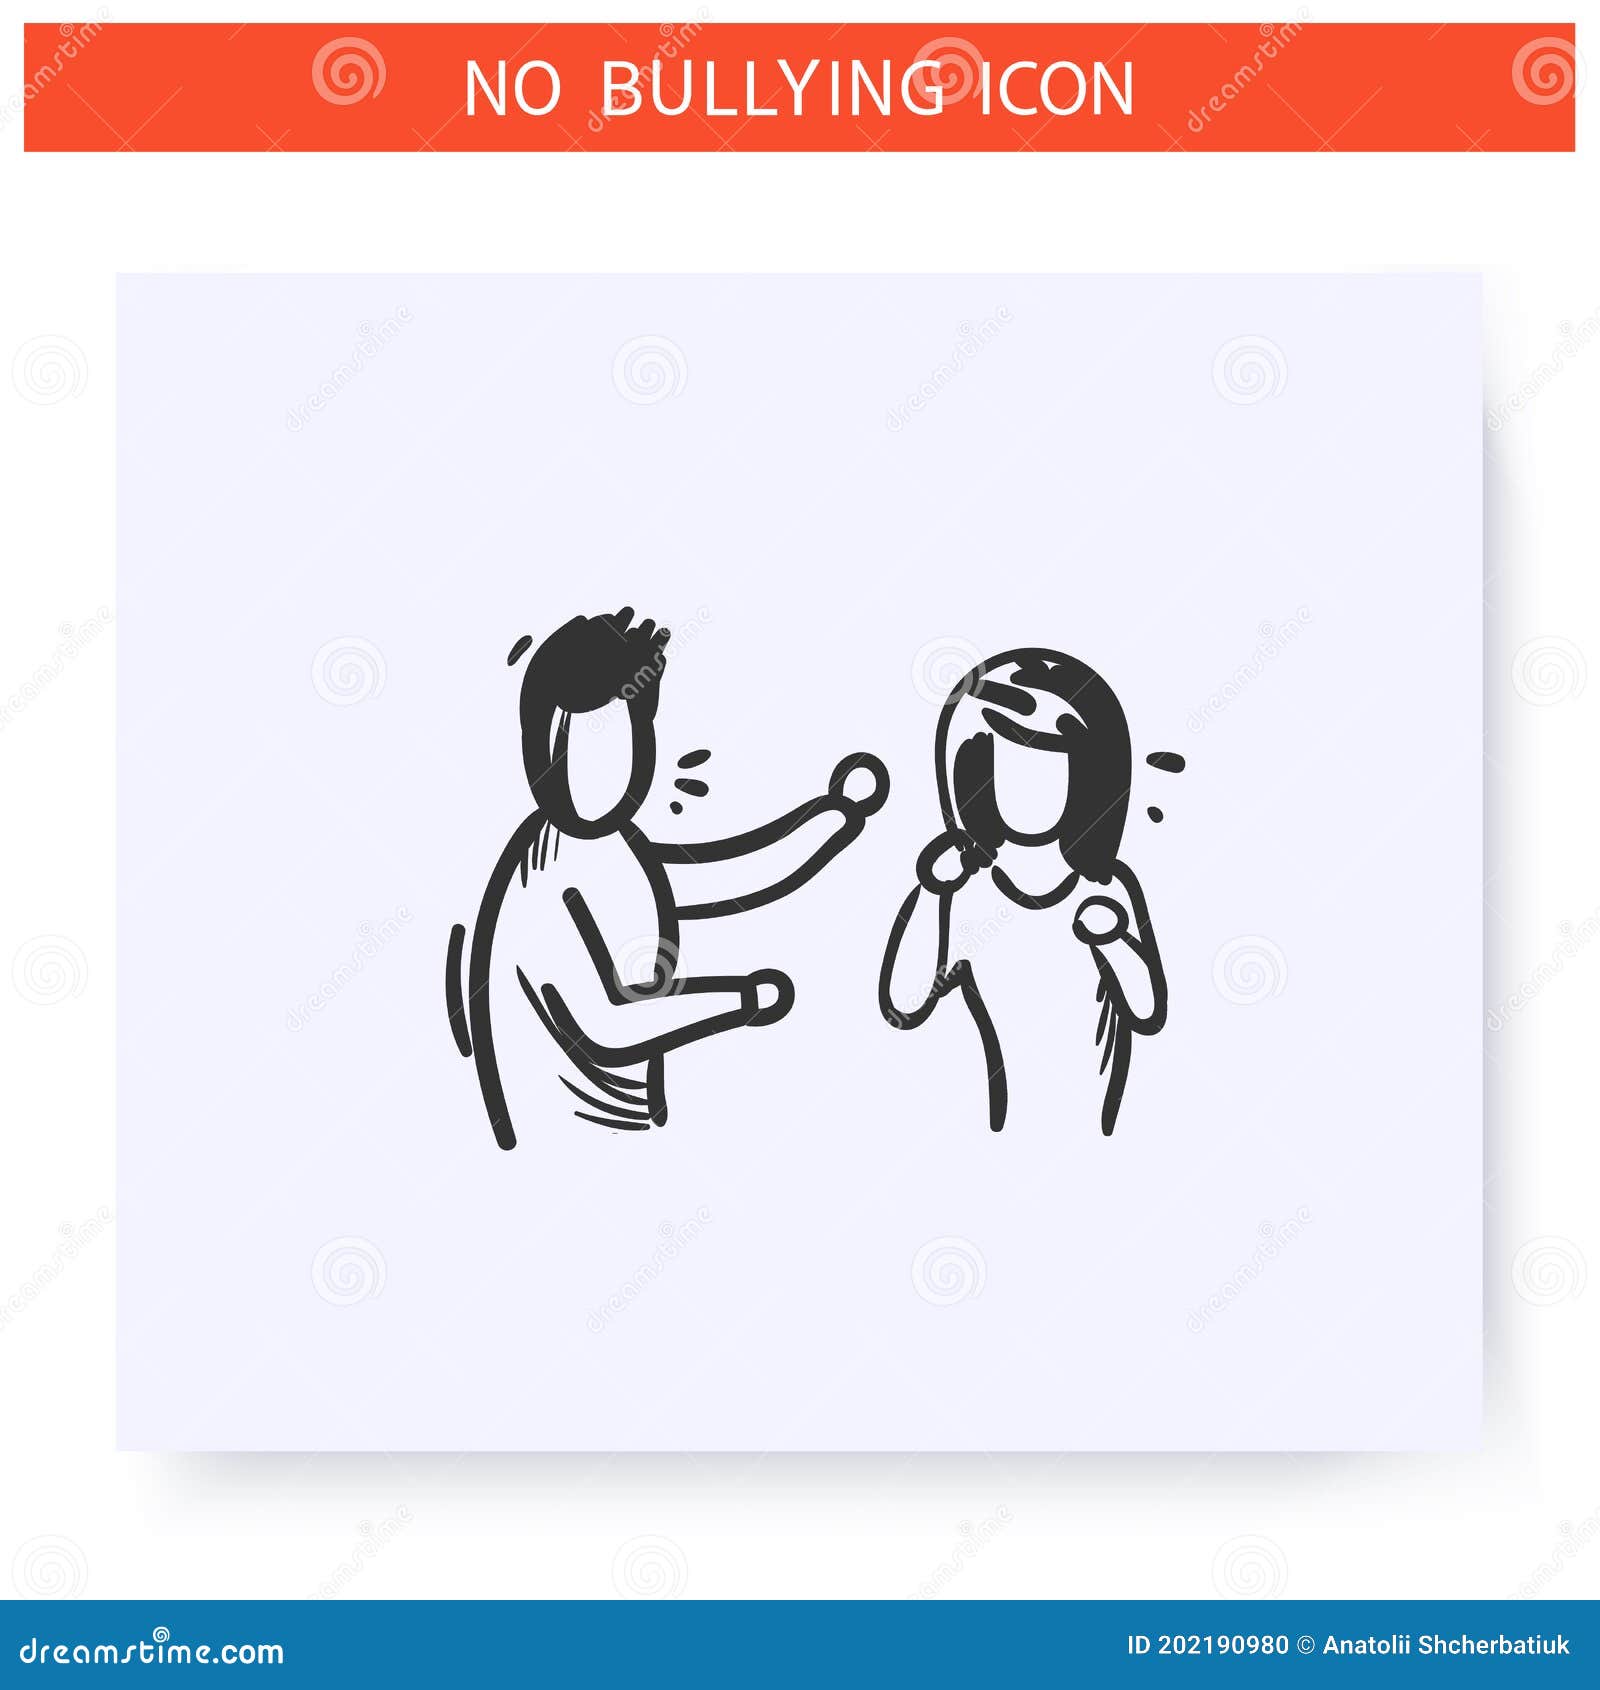 Bullying Icon Stock Illustrations – 2,649 Bullying Icon Stock  Illustrations, Vectors & Clipart - Dreamstime